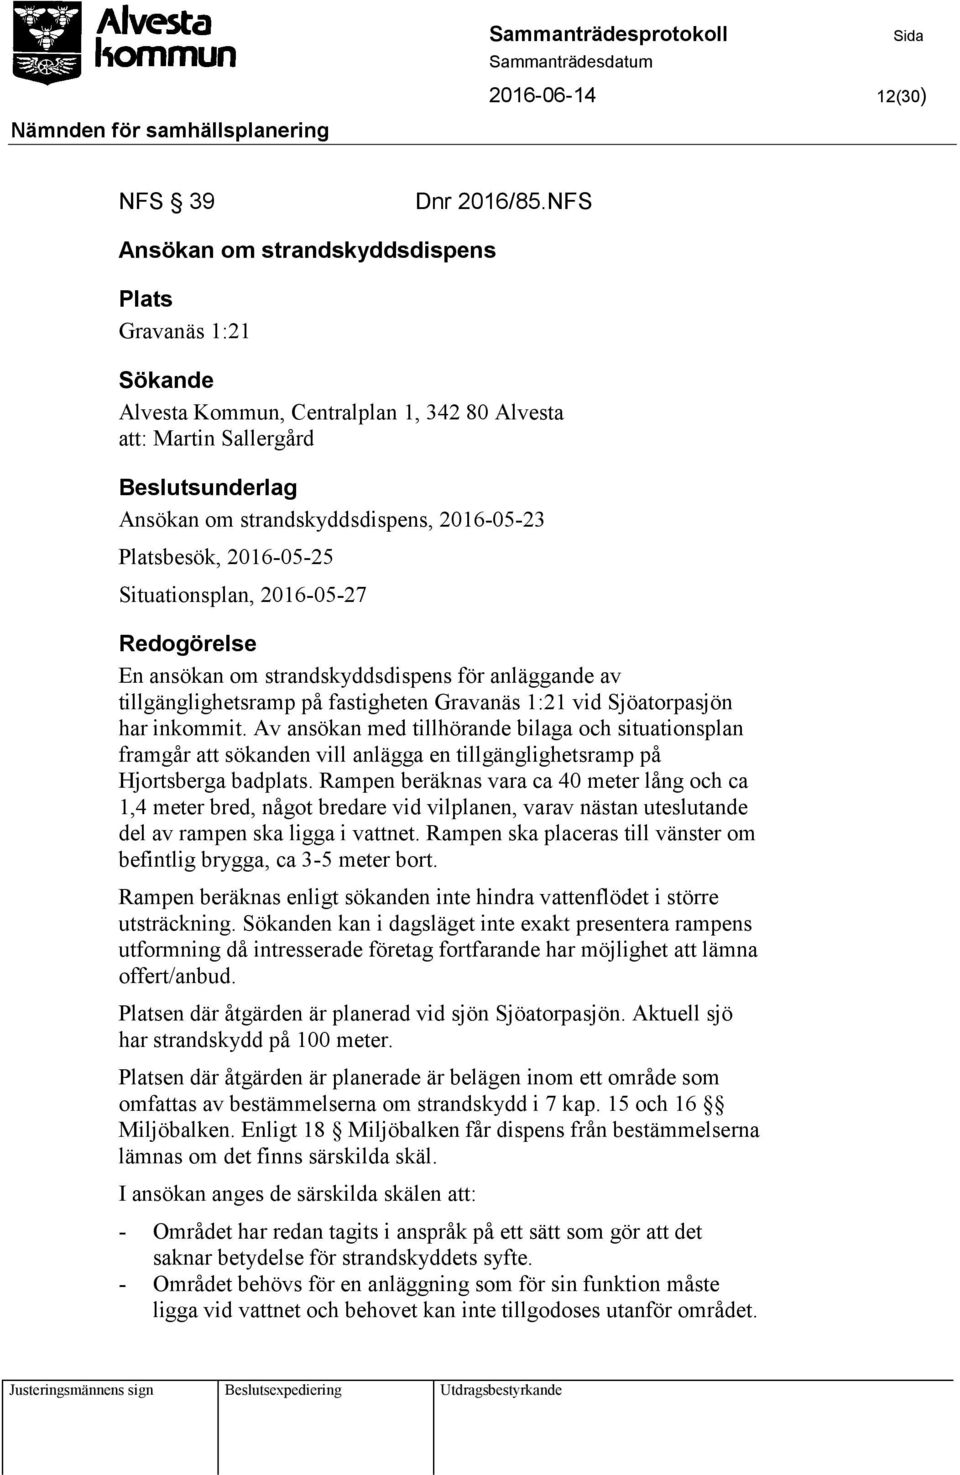 Platsbesök, 2016-05-25 Situationsplan, 2016-05-27 Redogörelse En ansökan om strandskyddsdispens för anläggande av tillgänglighetsramp på fastigheten Gravanäs 1:21 vid Sjöatorpasjön har inkommit.